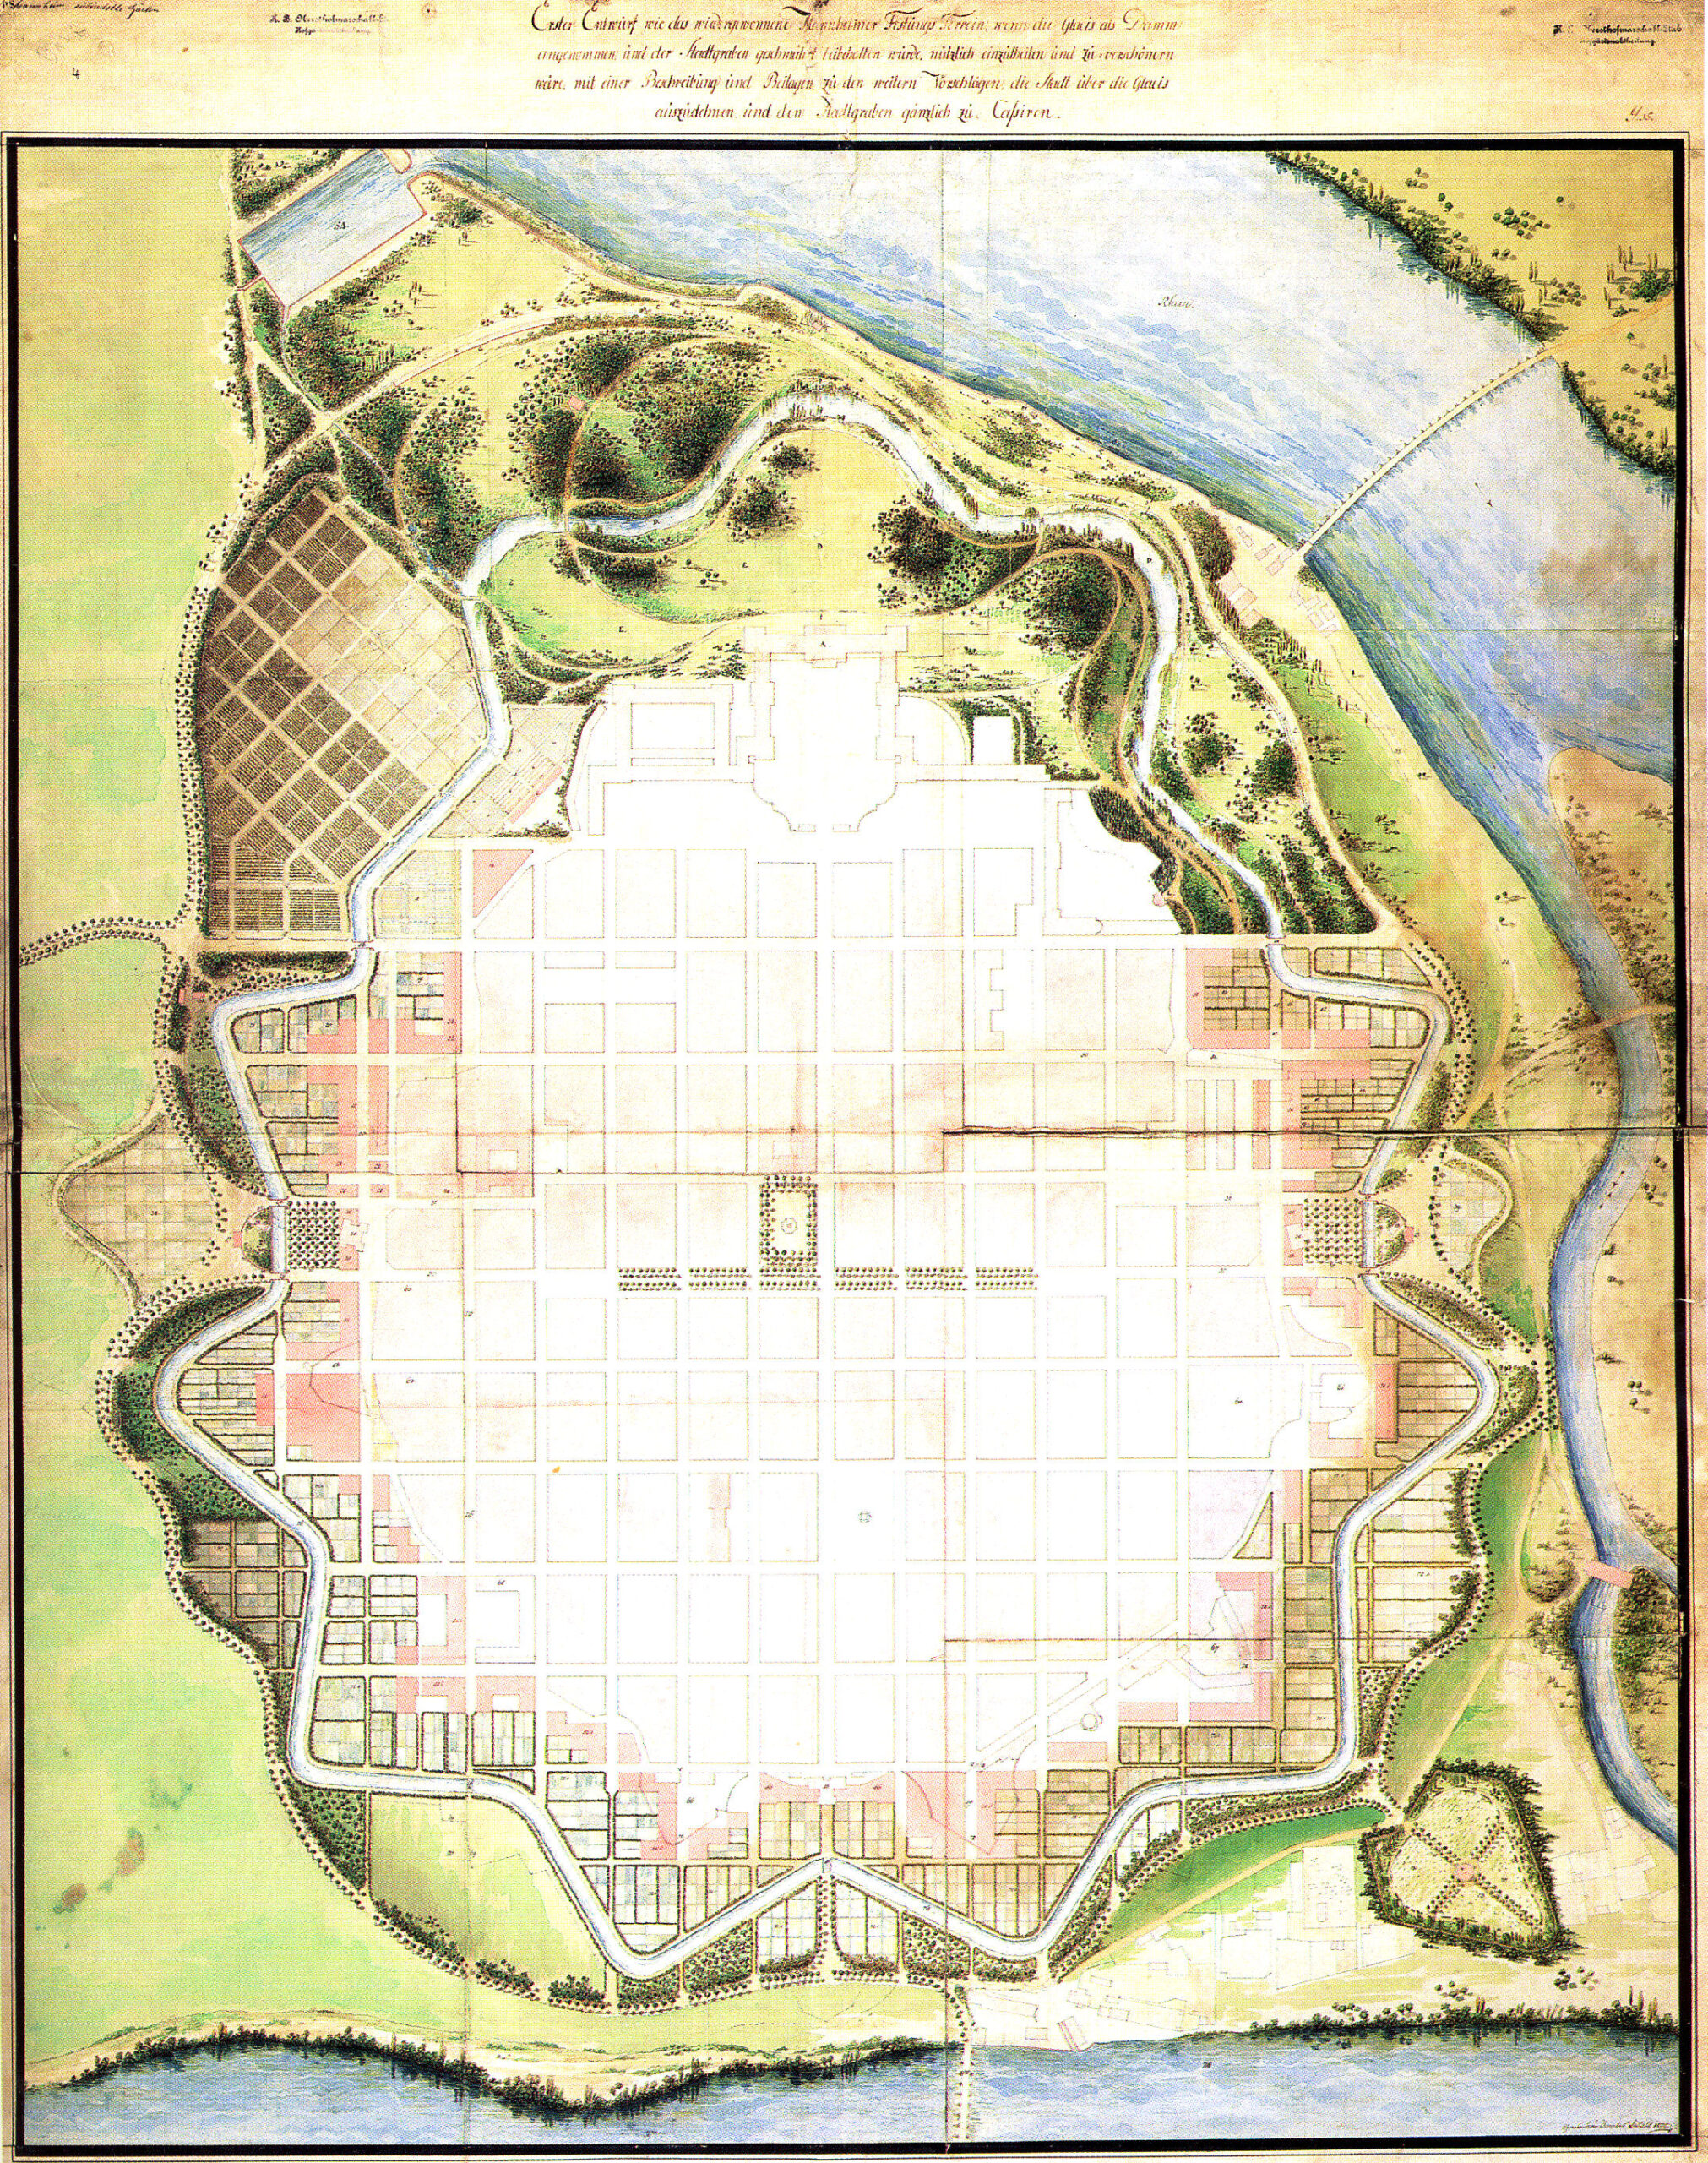 Mannheim, 1800, FriedrichSckell